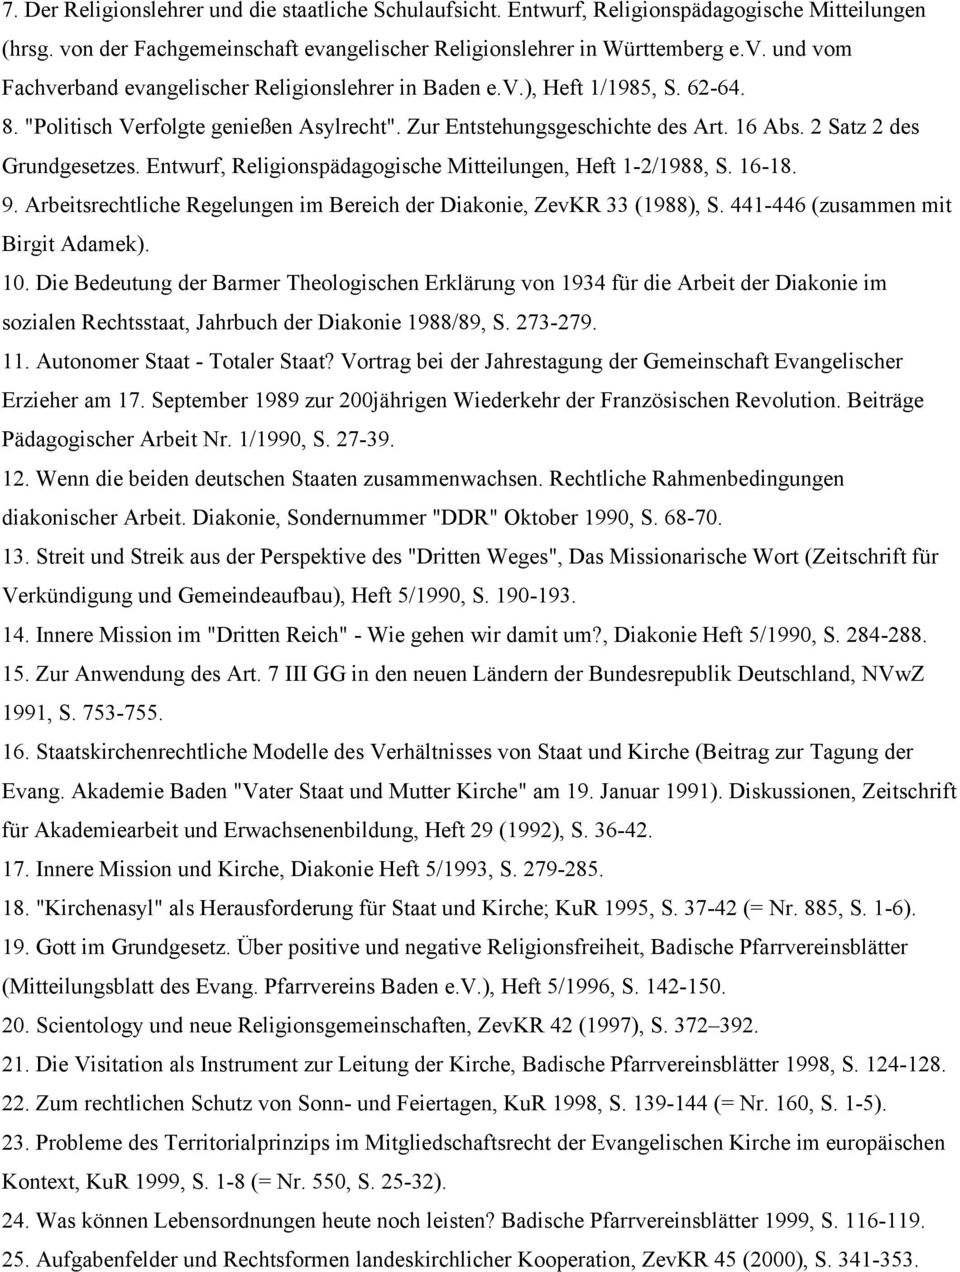 Entwurf, Religionspädagogische Mitteilungen, Heft 1-2/1988, S. 16-18. 9. Arbeitsrechtliche Regelungen im Bereich der Diakonie, ZevKR 33 (1988), S. 441-446 (zusammen mit Birgit Adamek). 10.